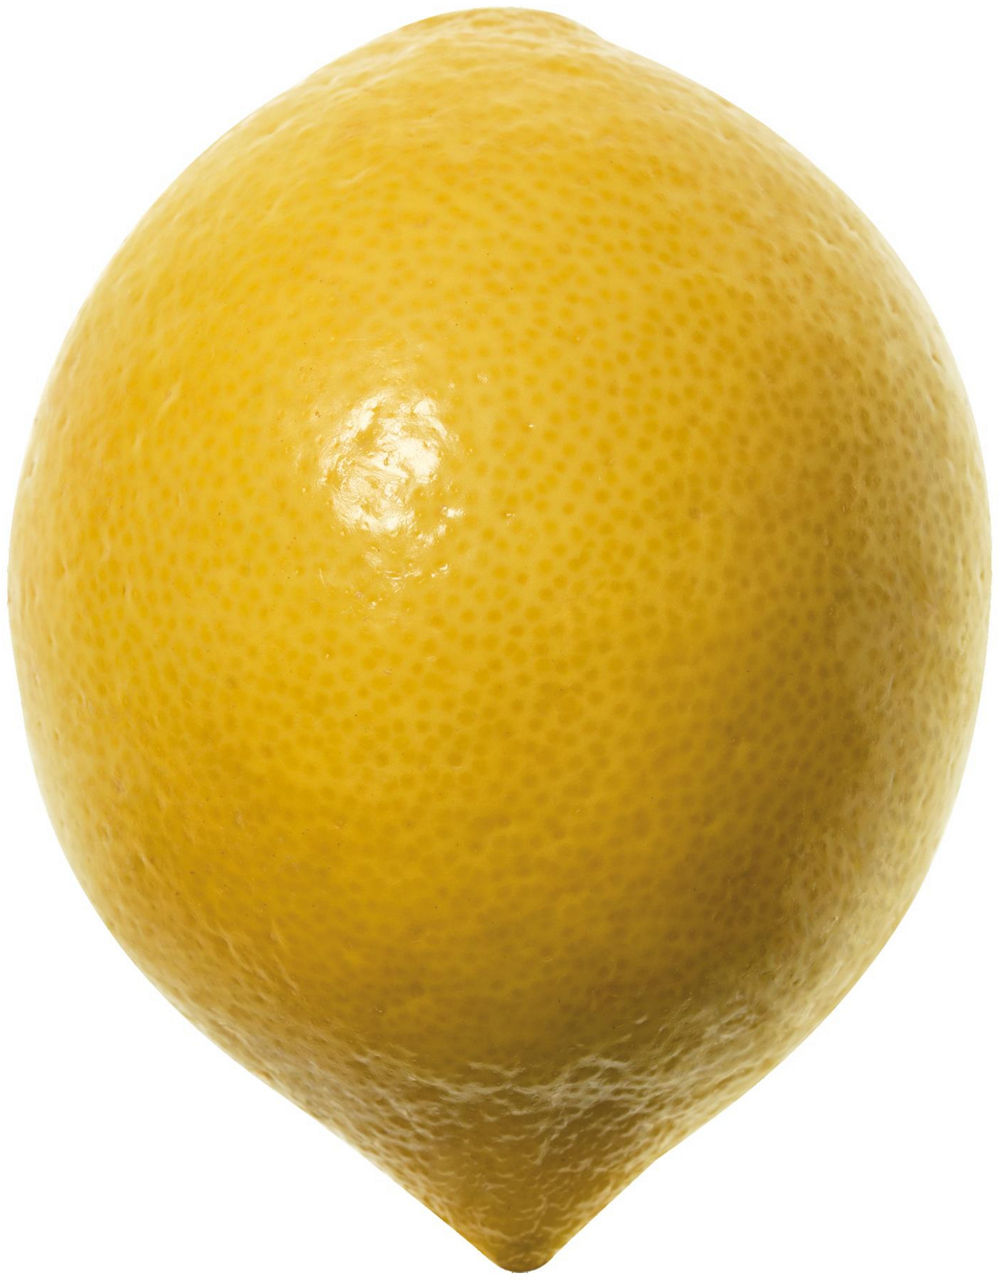 Limoni affogliati costa d amalfi igp it 4 i^ sf